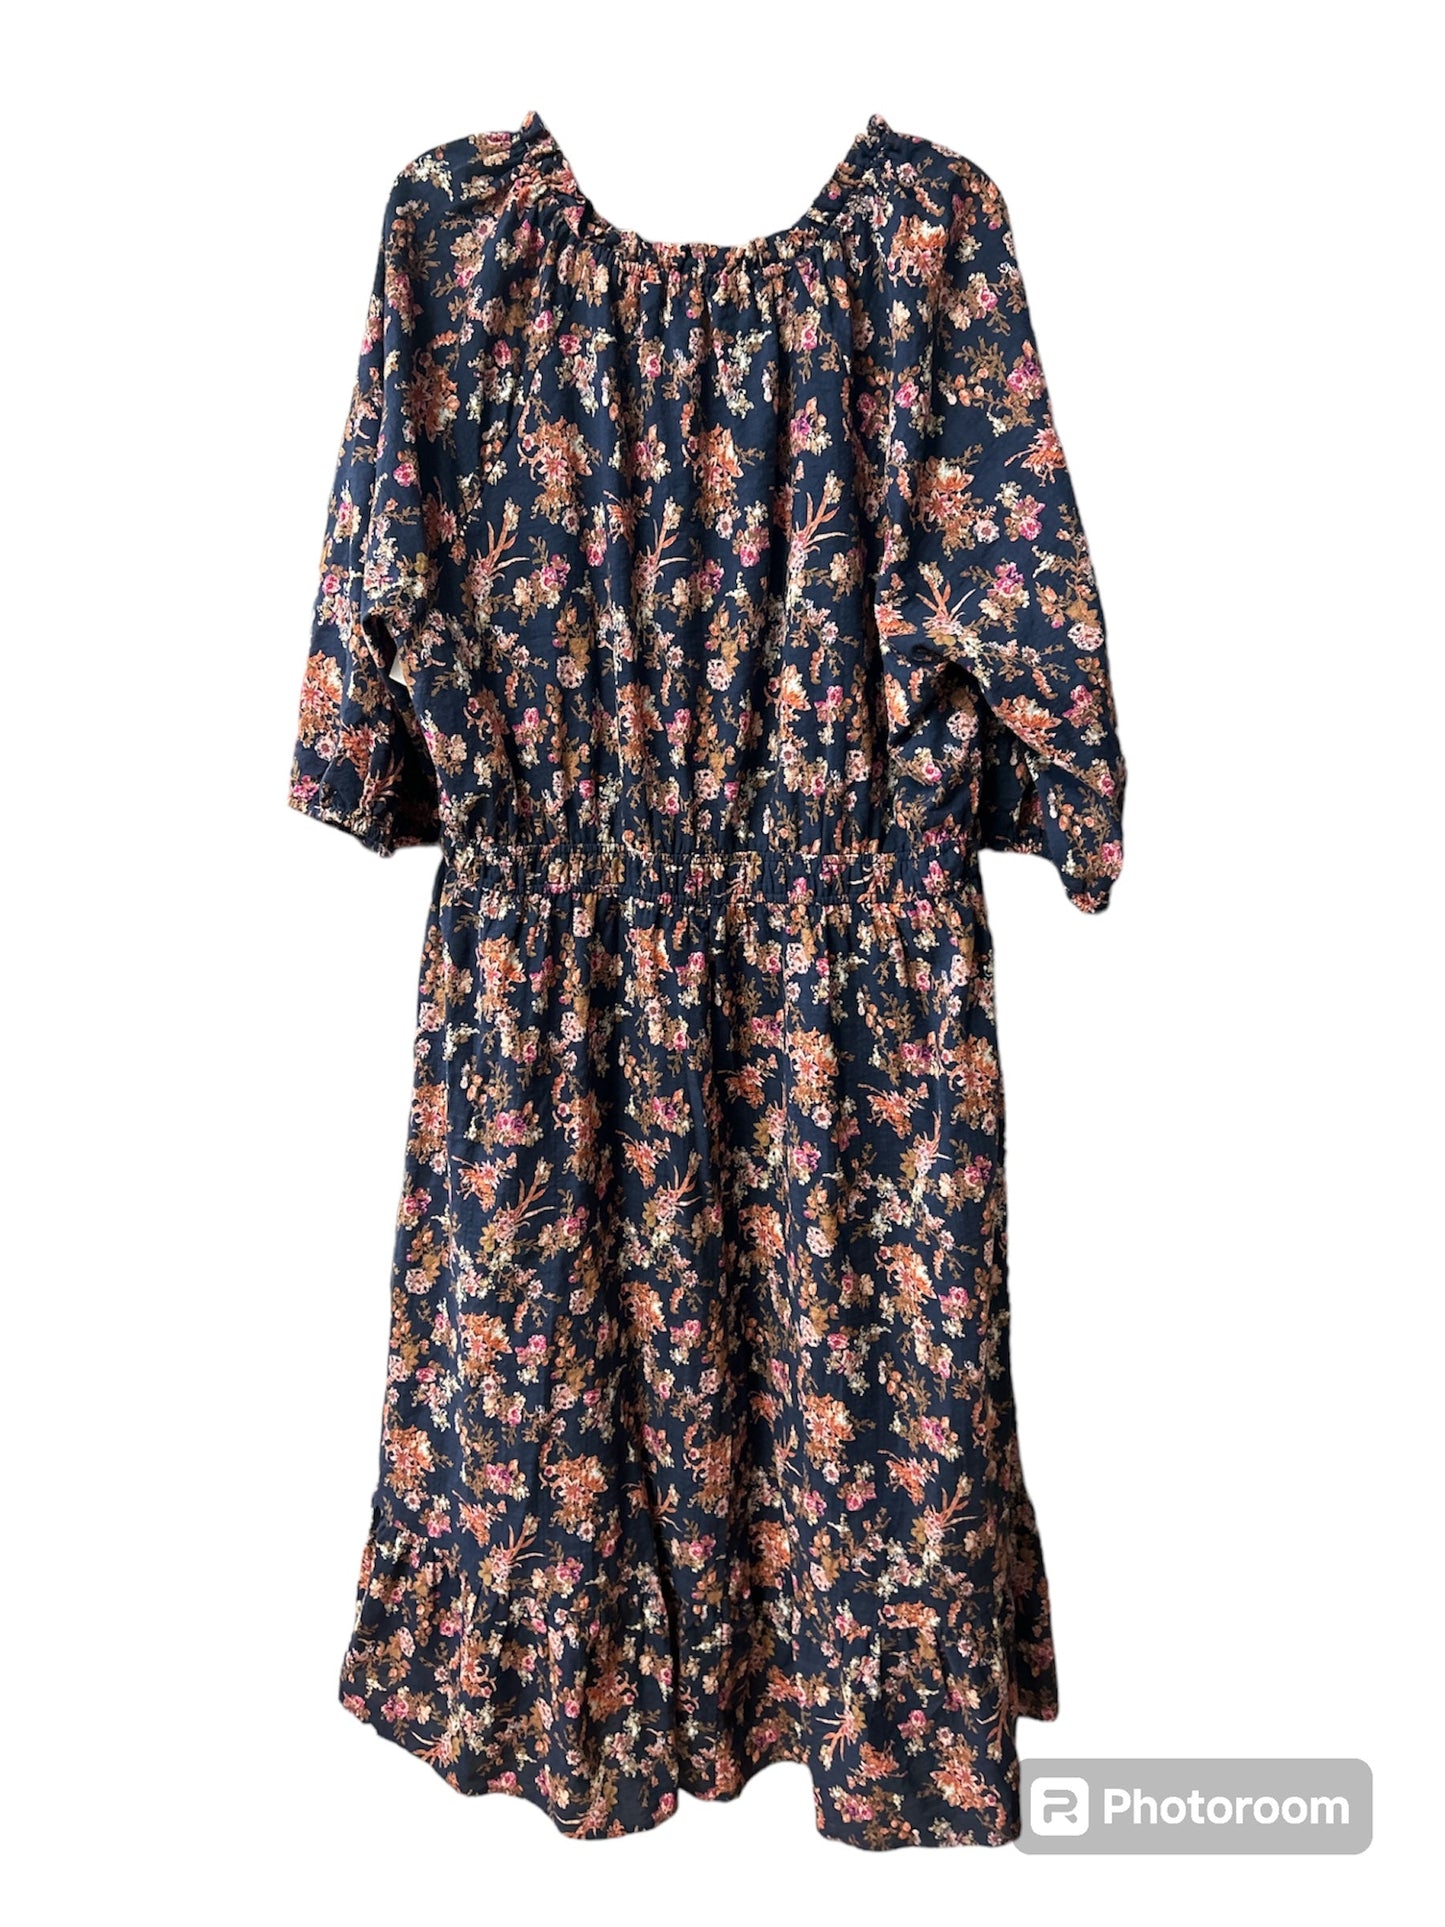 Floral Print Dress Designer Frye, Size 2x